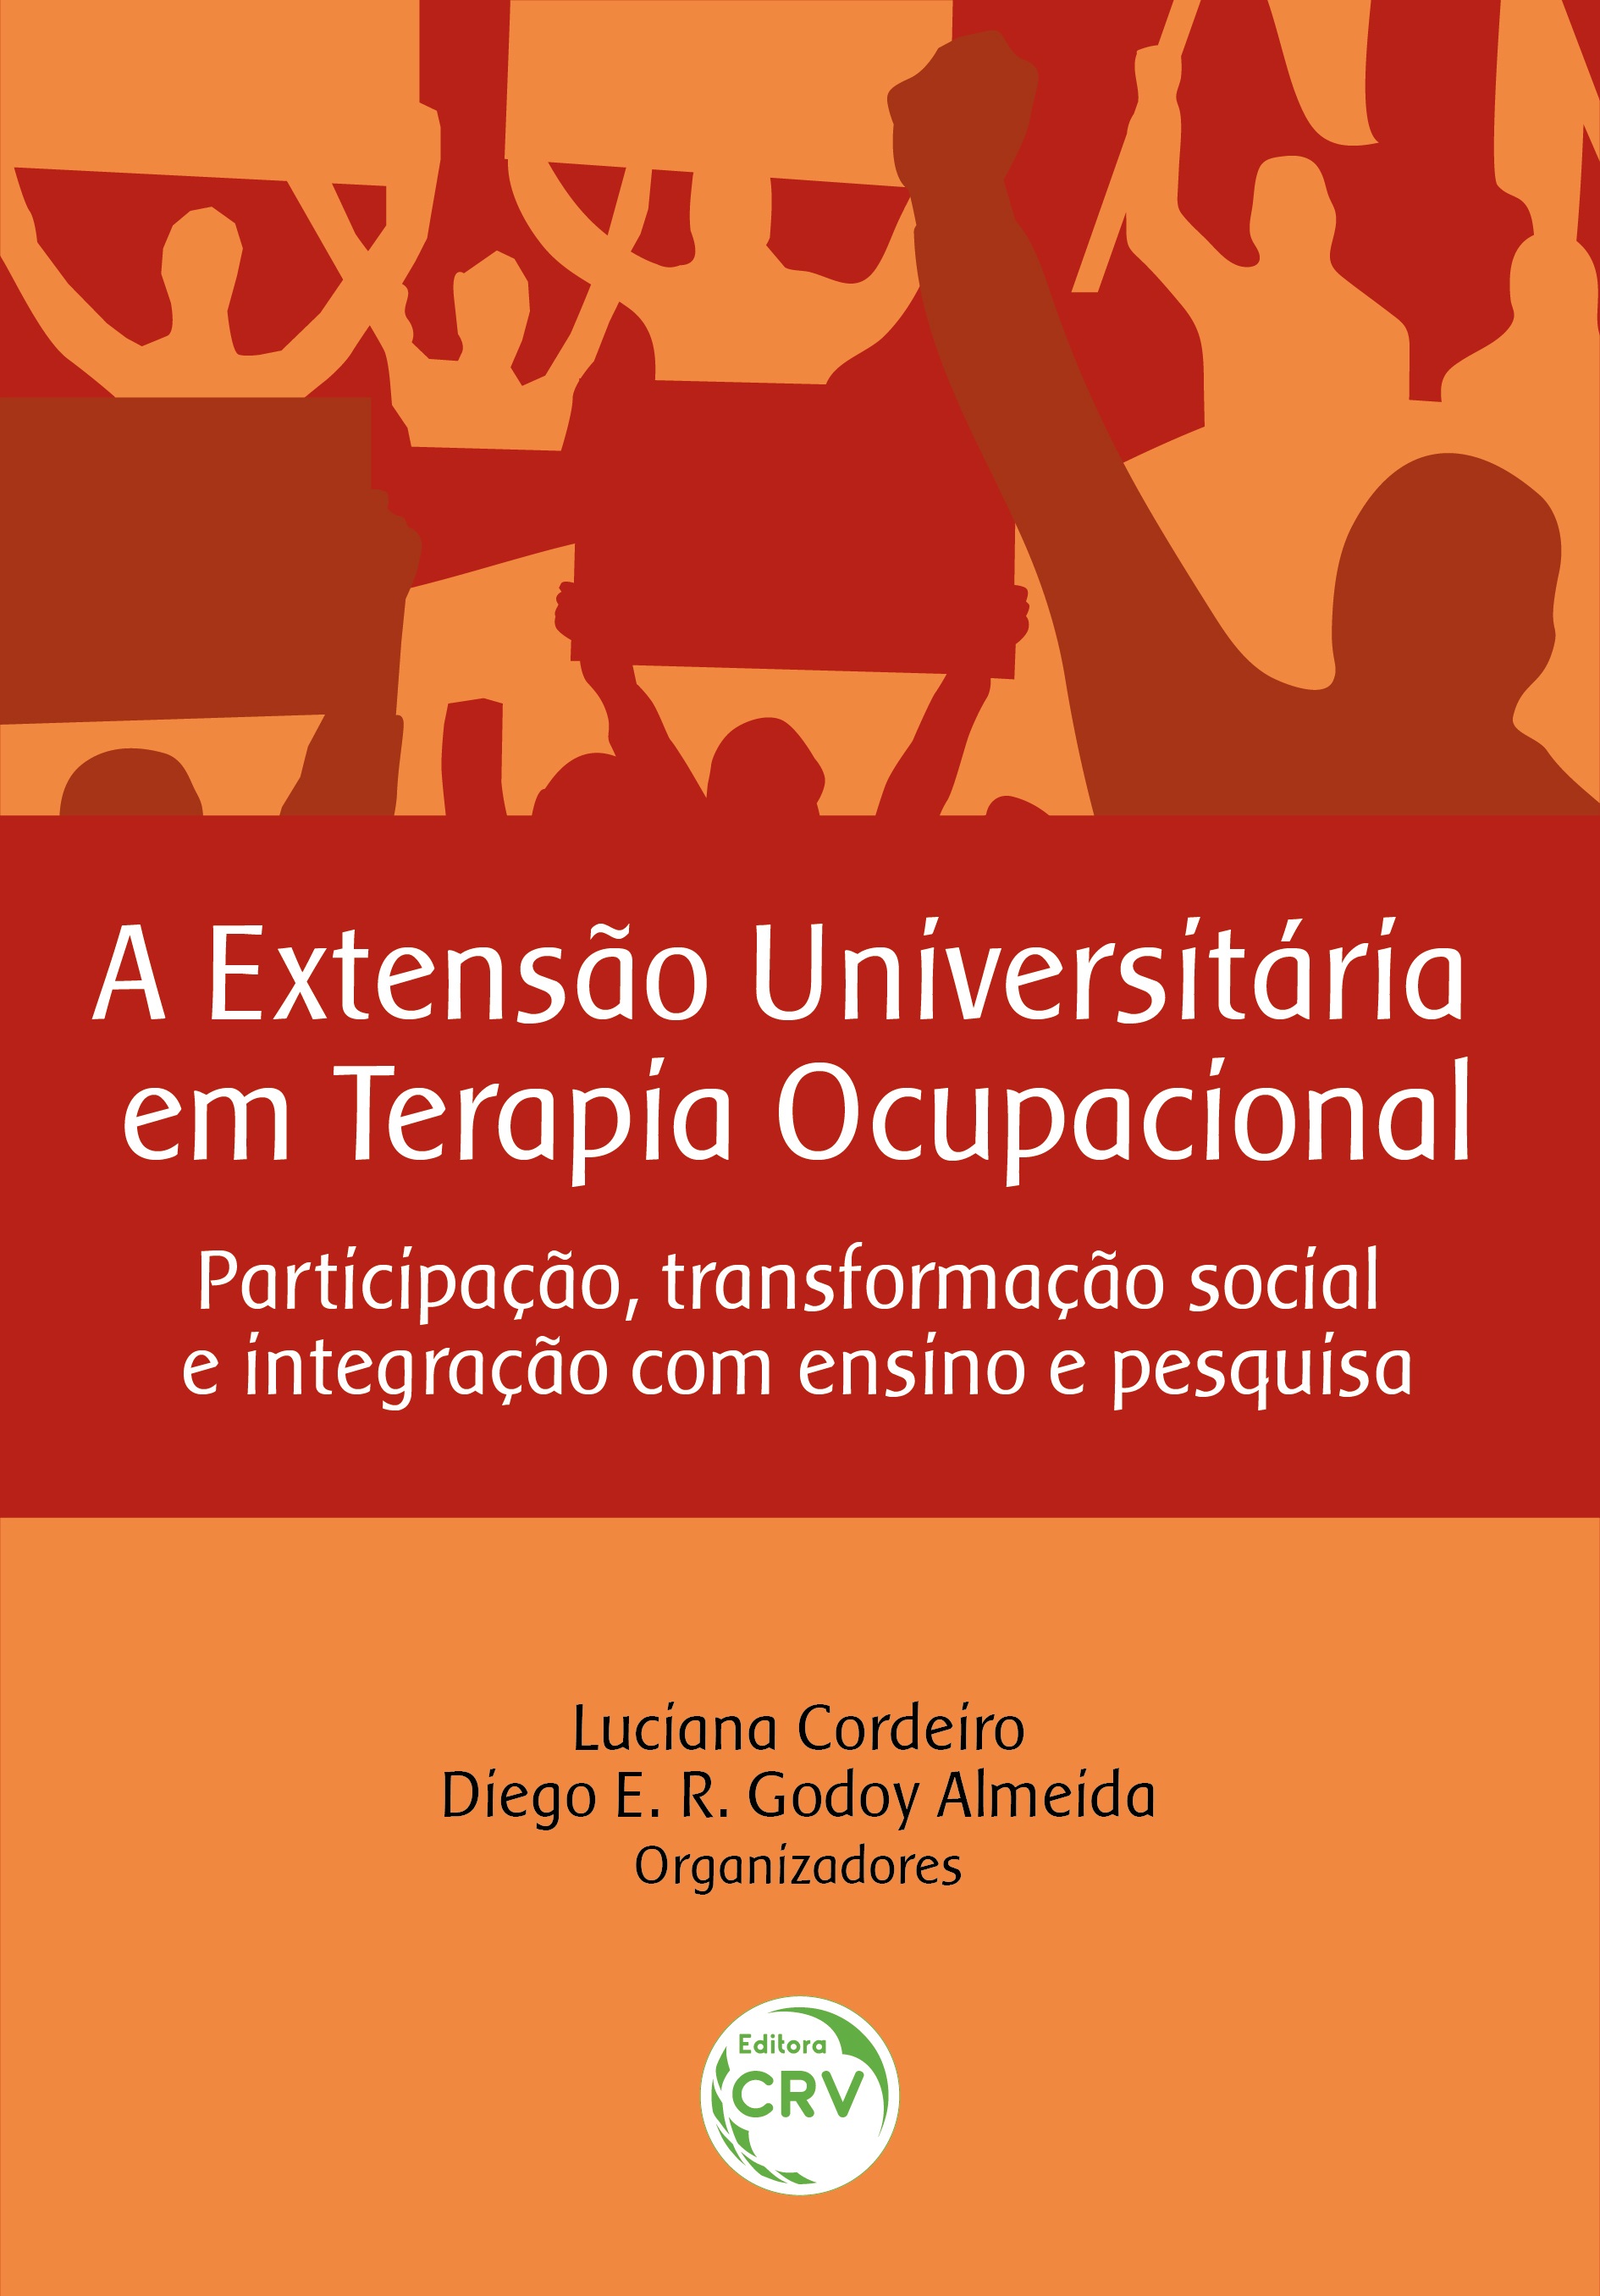 Livisa Cursos - Ensino e Integrais (livisacursos) - Profile